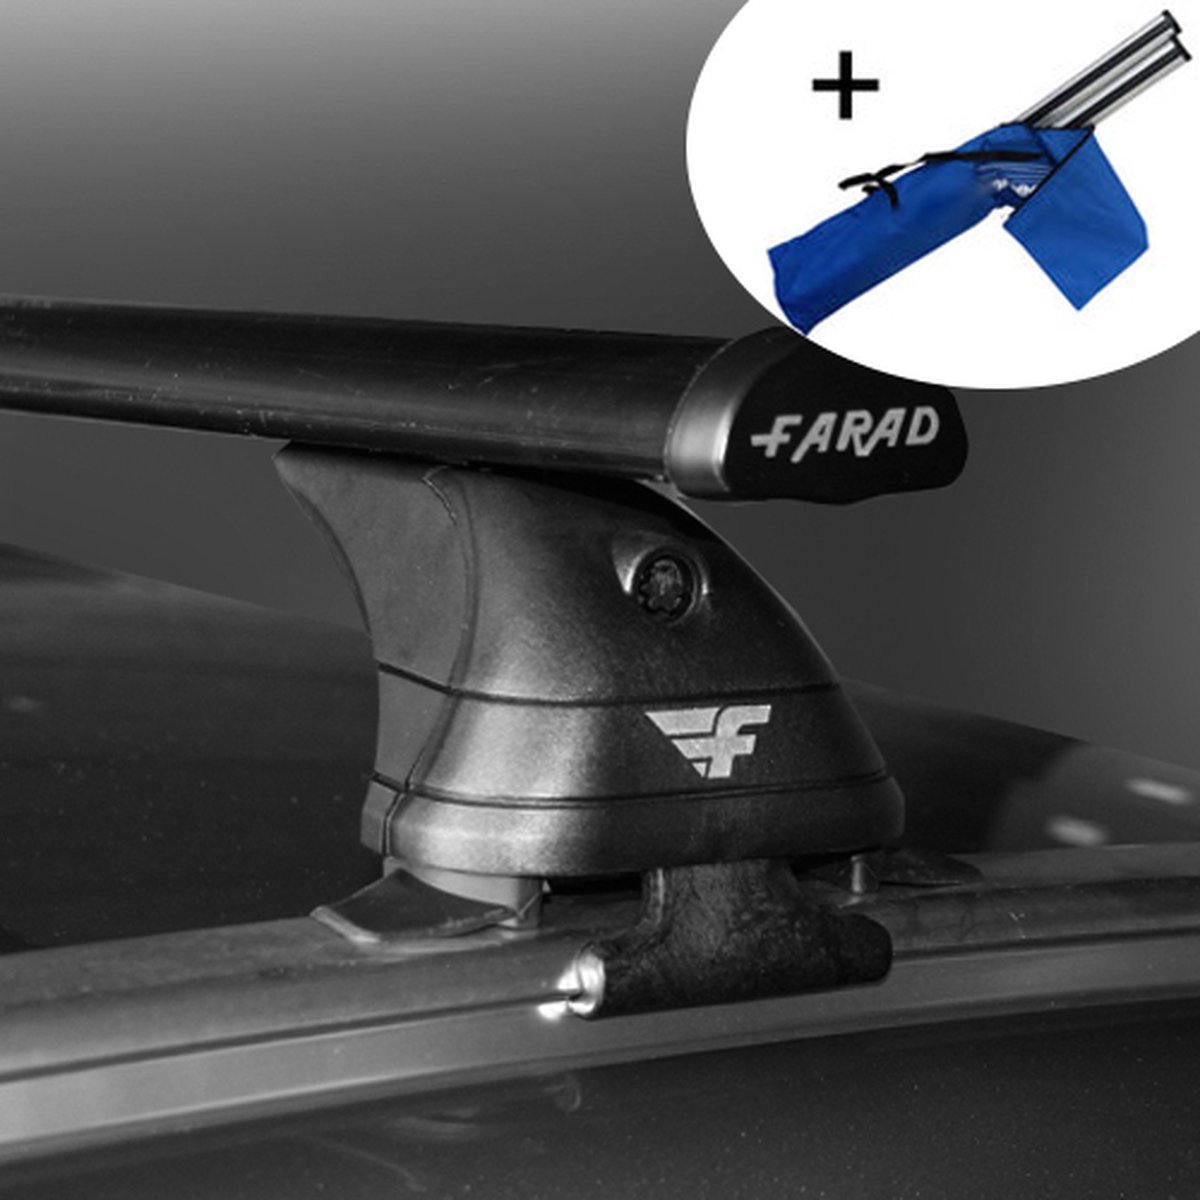 Dakdragers geschikt voor Seat Altea Freetrack 5 deurs hatchback 2007 t/m 2015 - Staal - inclusief dakdrager opbergtas